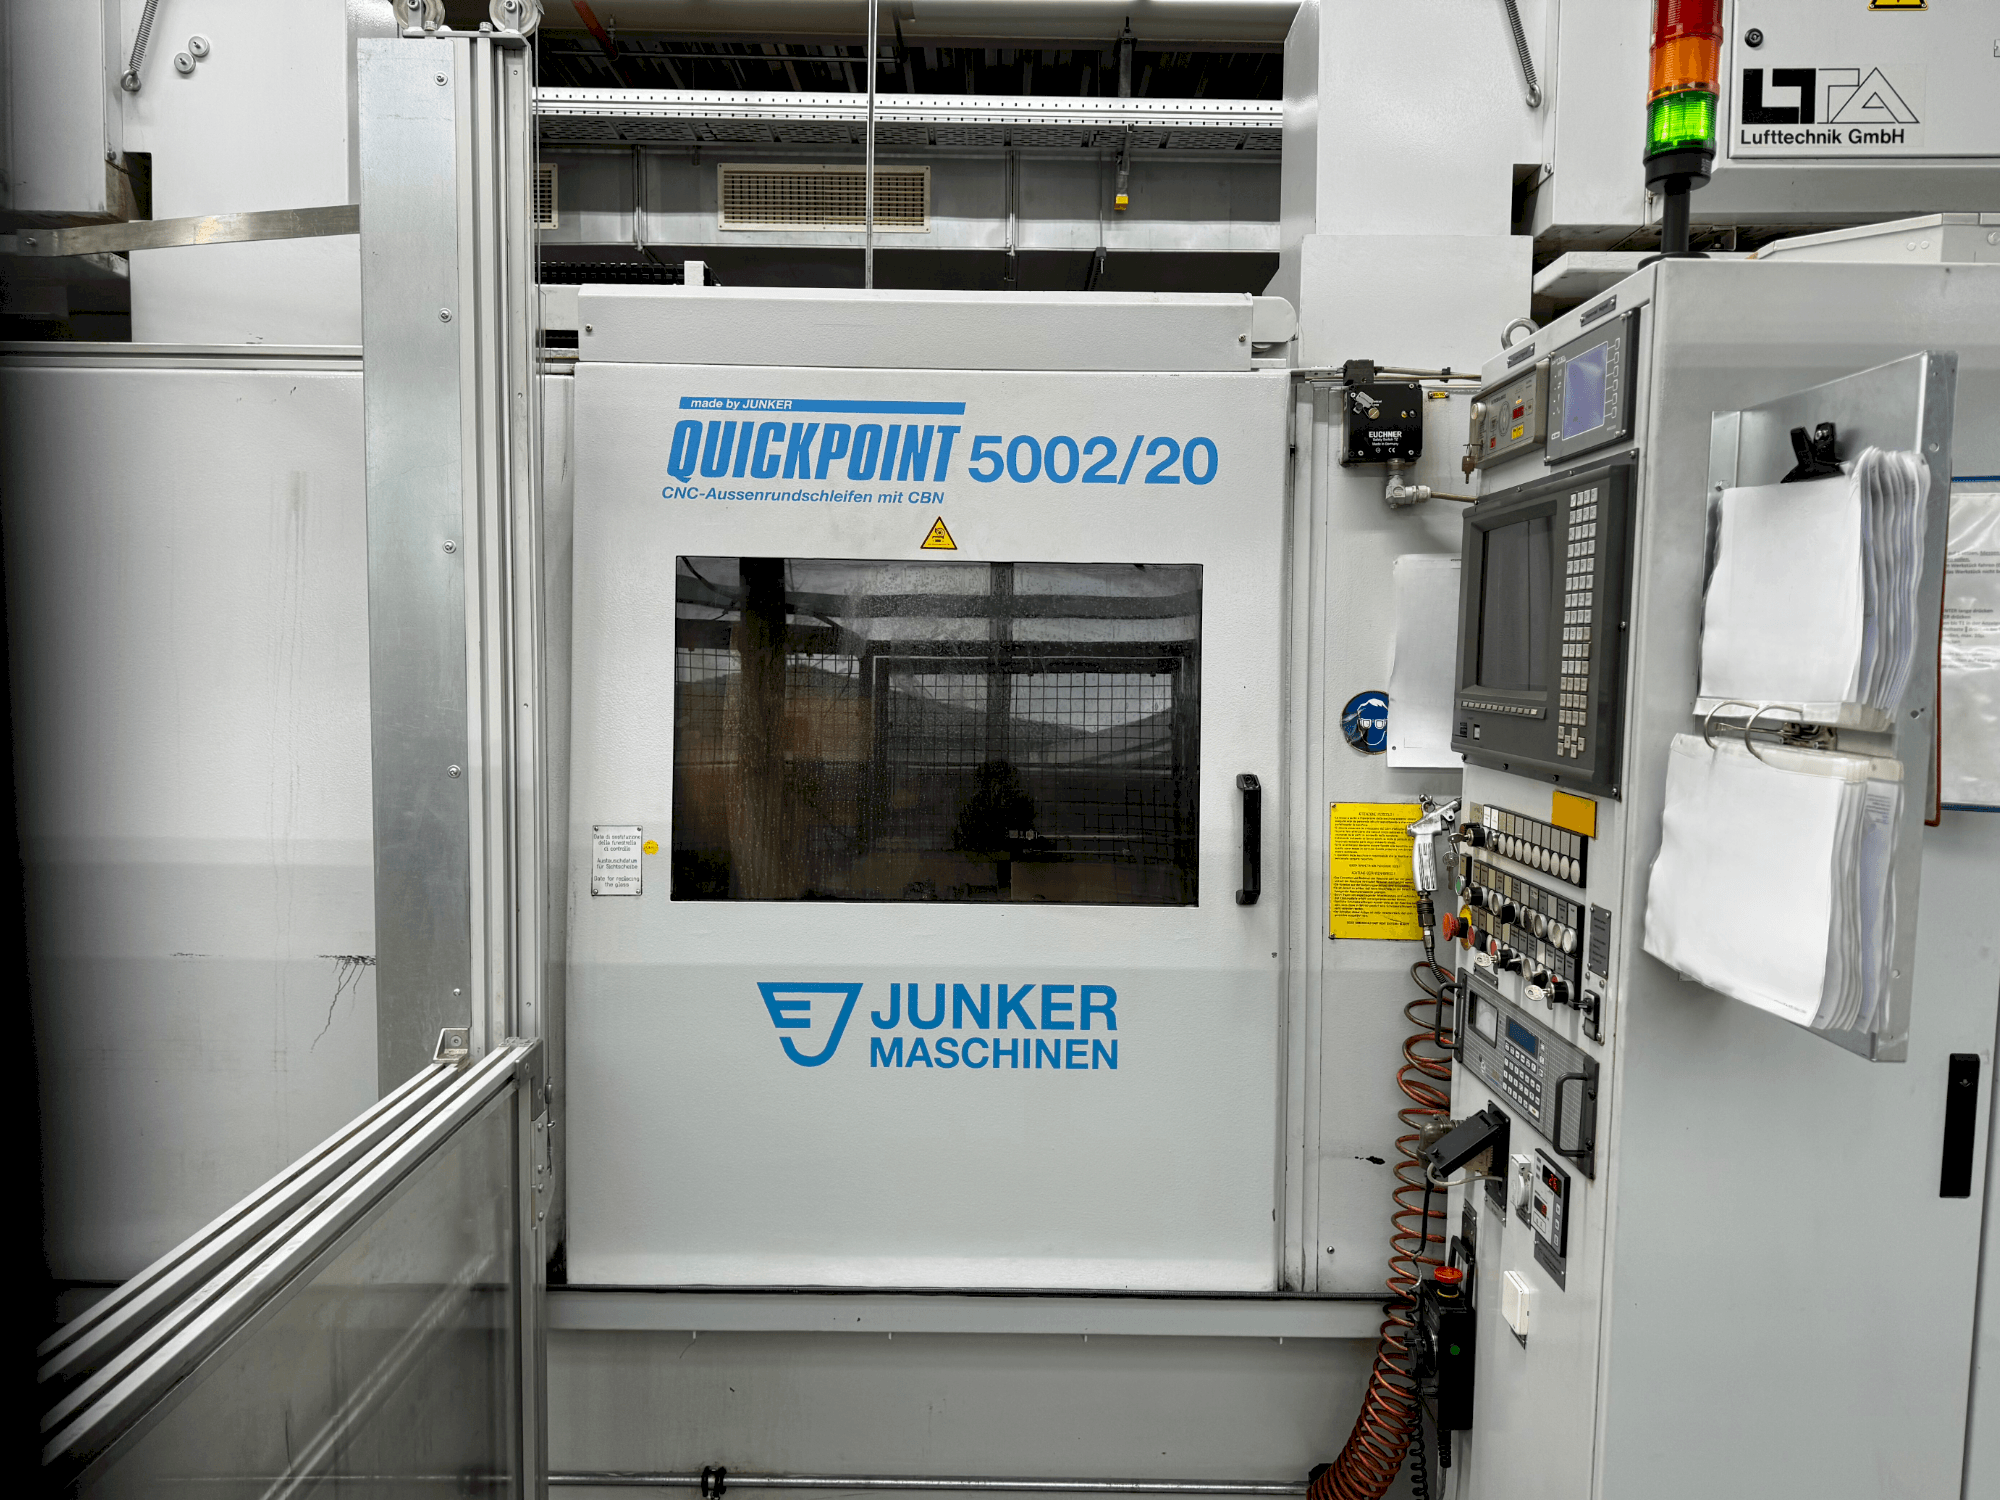 Vue de face de la machine JUNKER Quickpoint 5002/20